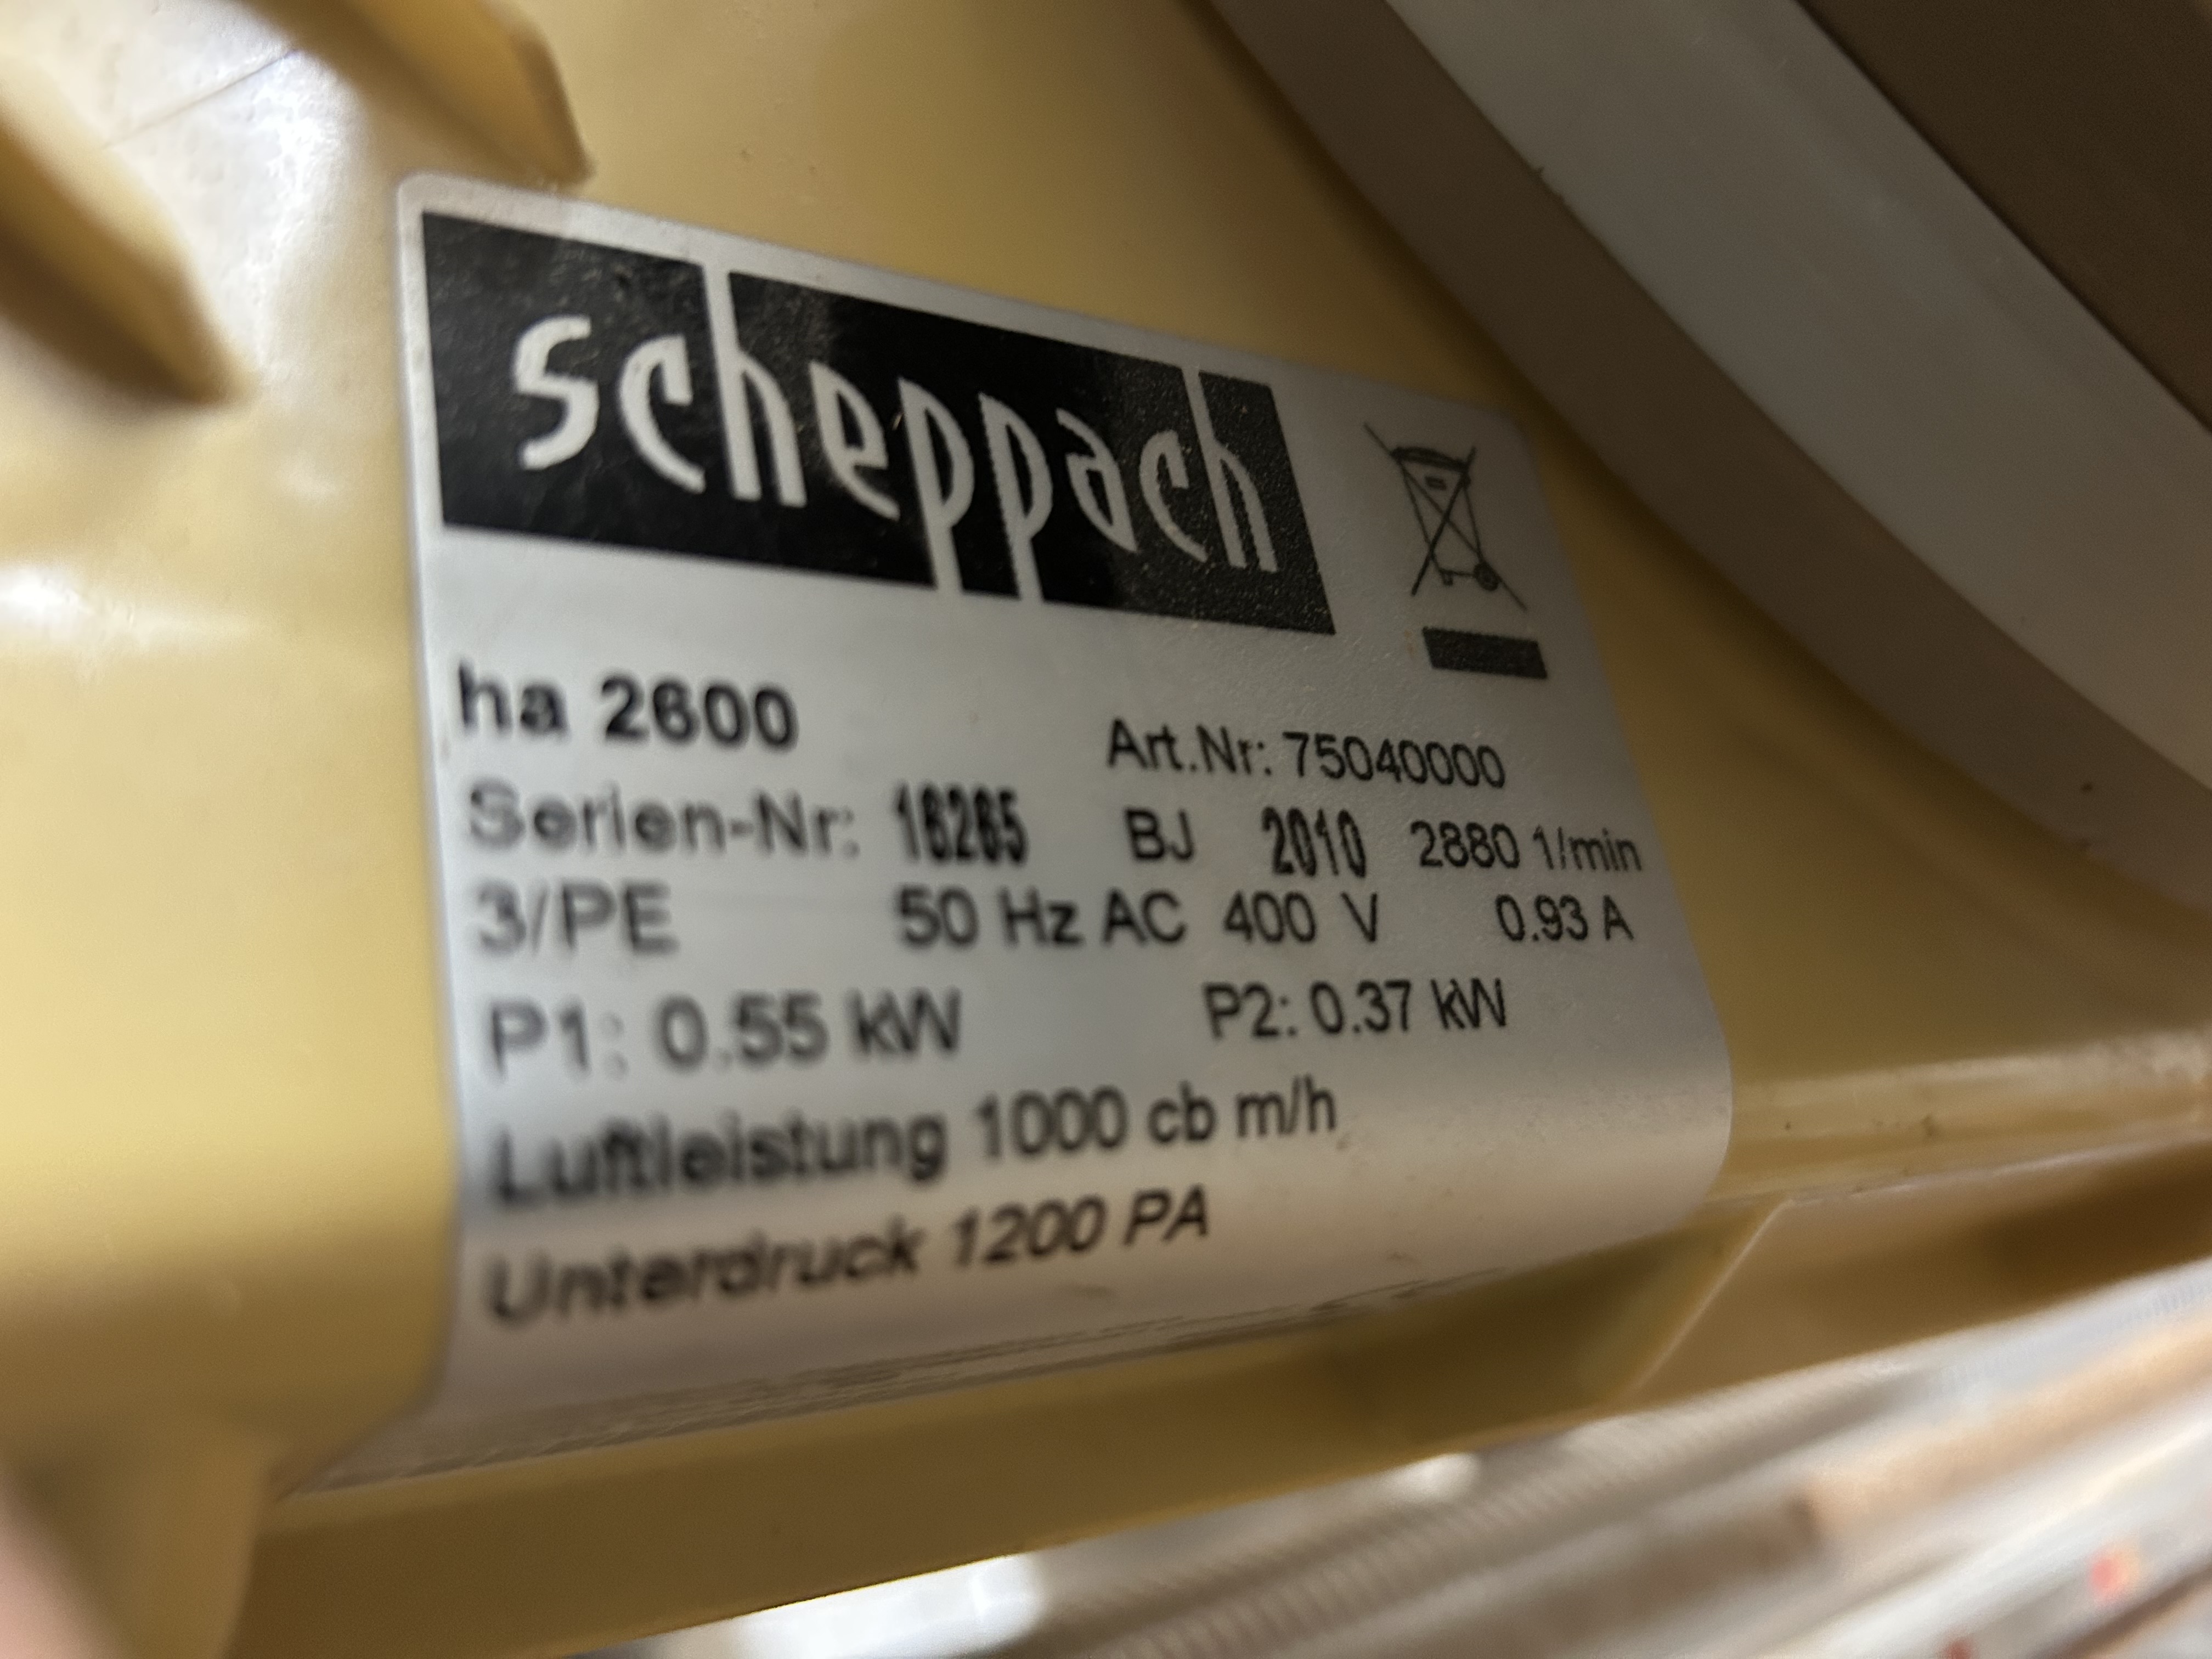 Scheppach HA 2600